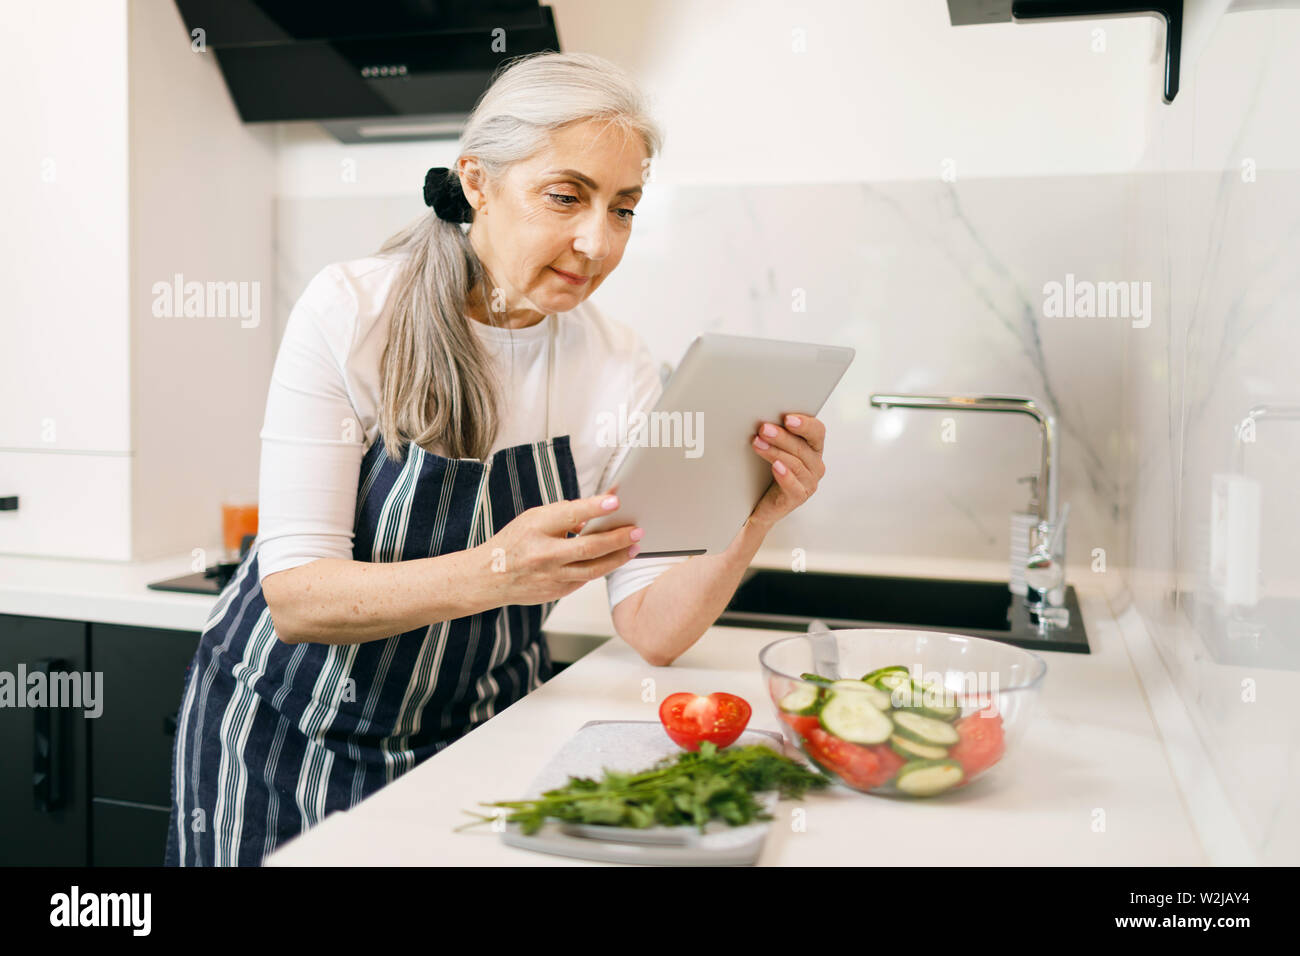 Lächelnde ältere Frau mit weißen Haaren in eine Schürze beobachten Rezepte an die Tablette beim Kochen in der Küche Stockfoto